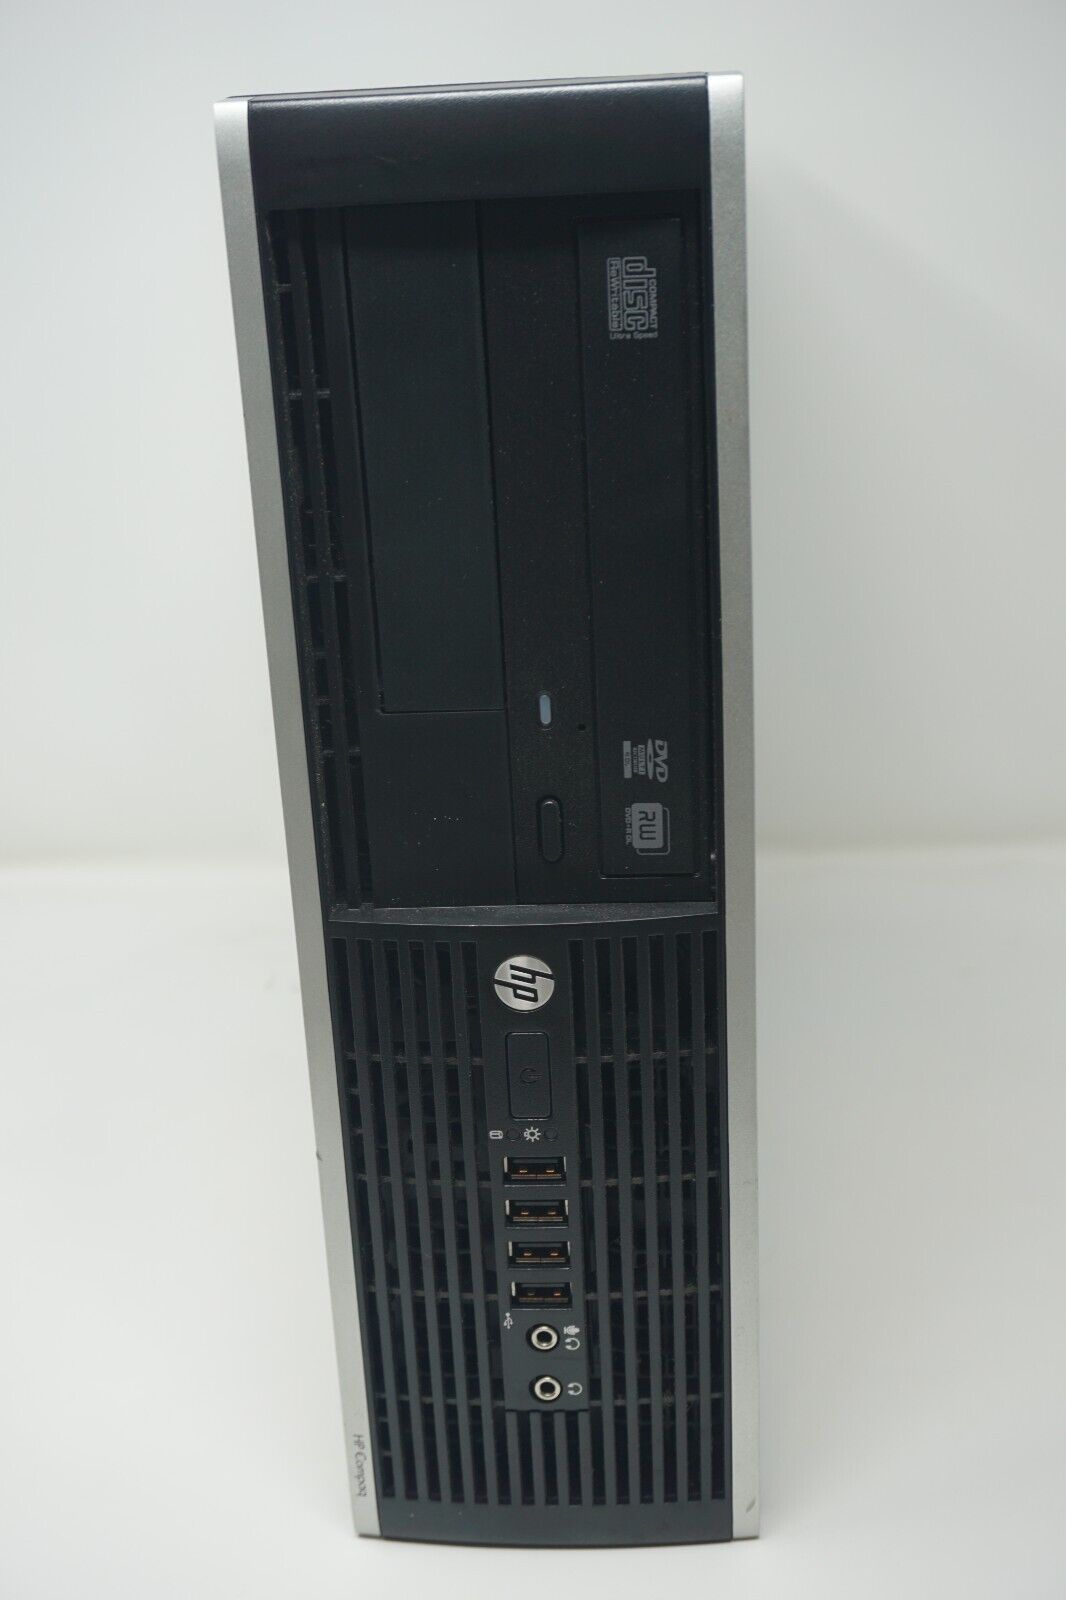 HP Compaq Pro 6300 SFF, Intel G2130 @3.20GHz, 4GB RAM, 500GB HDD, COA, NO OS